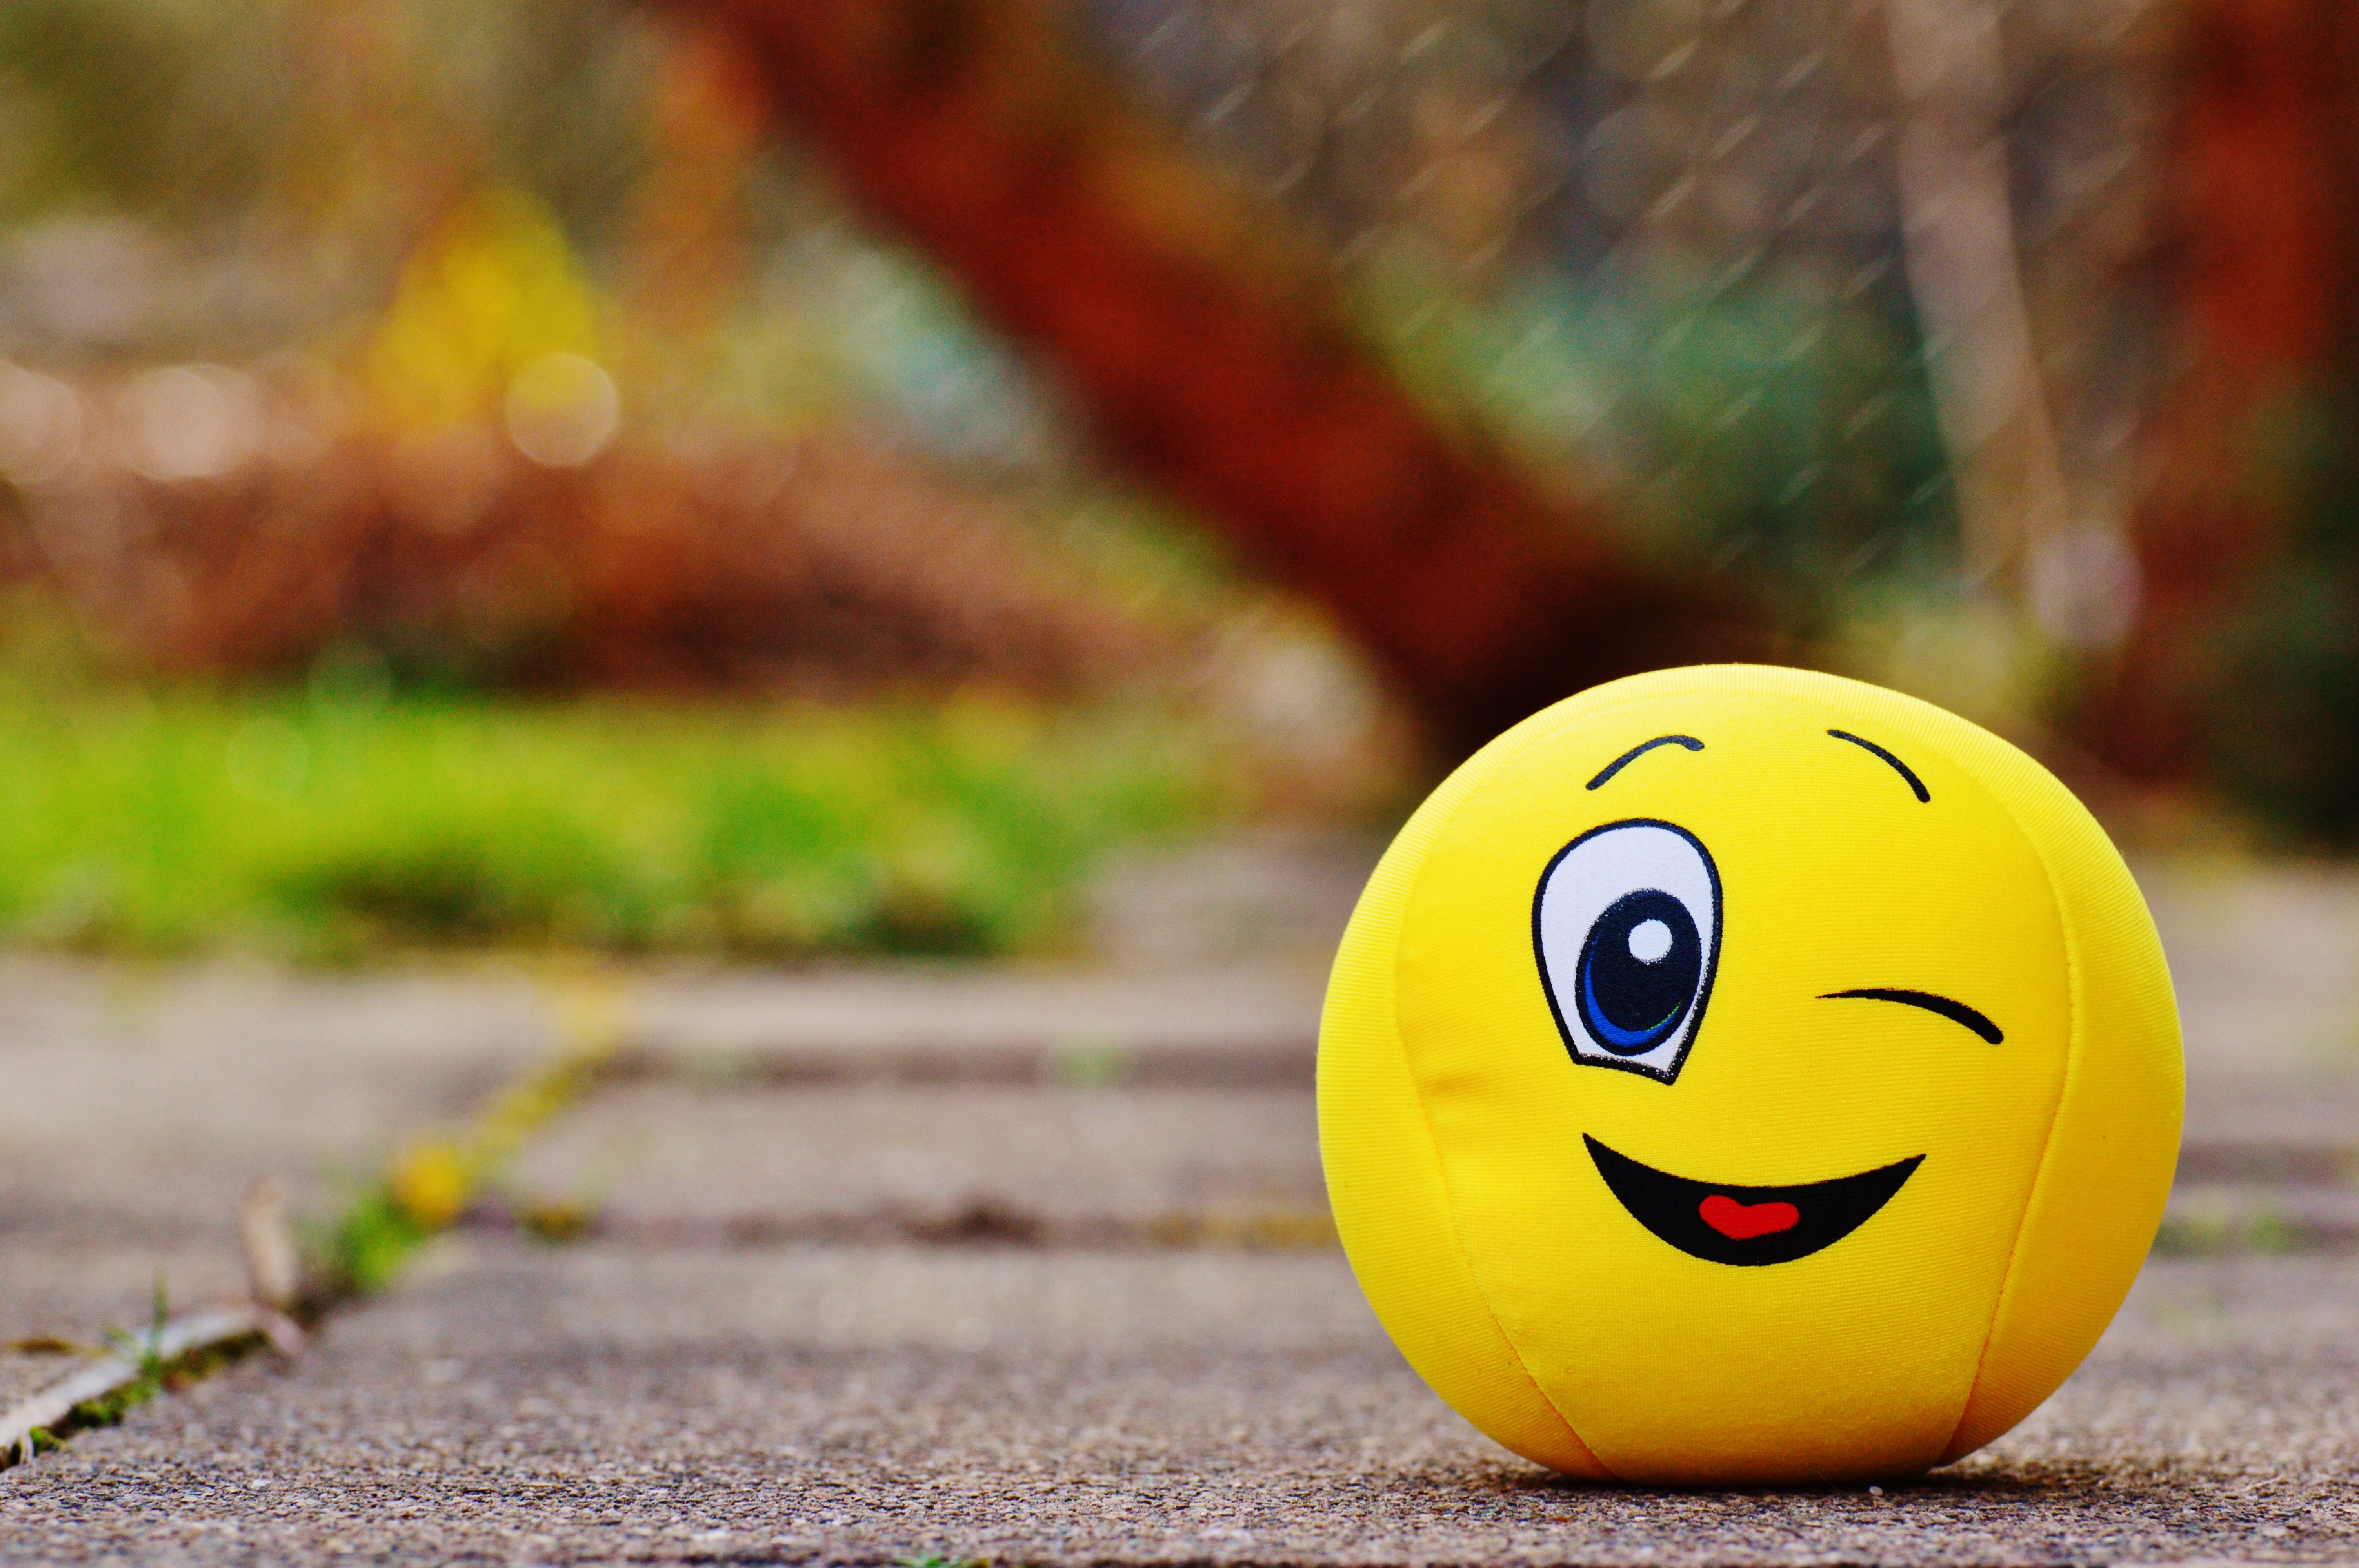 Yellow Smiley Ball Image